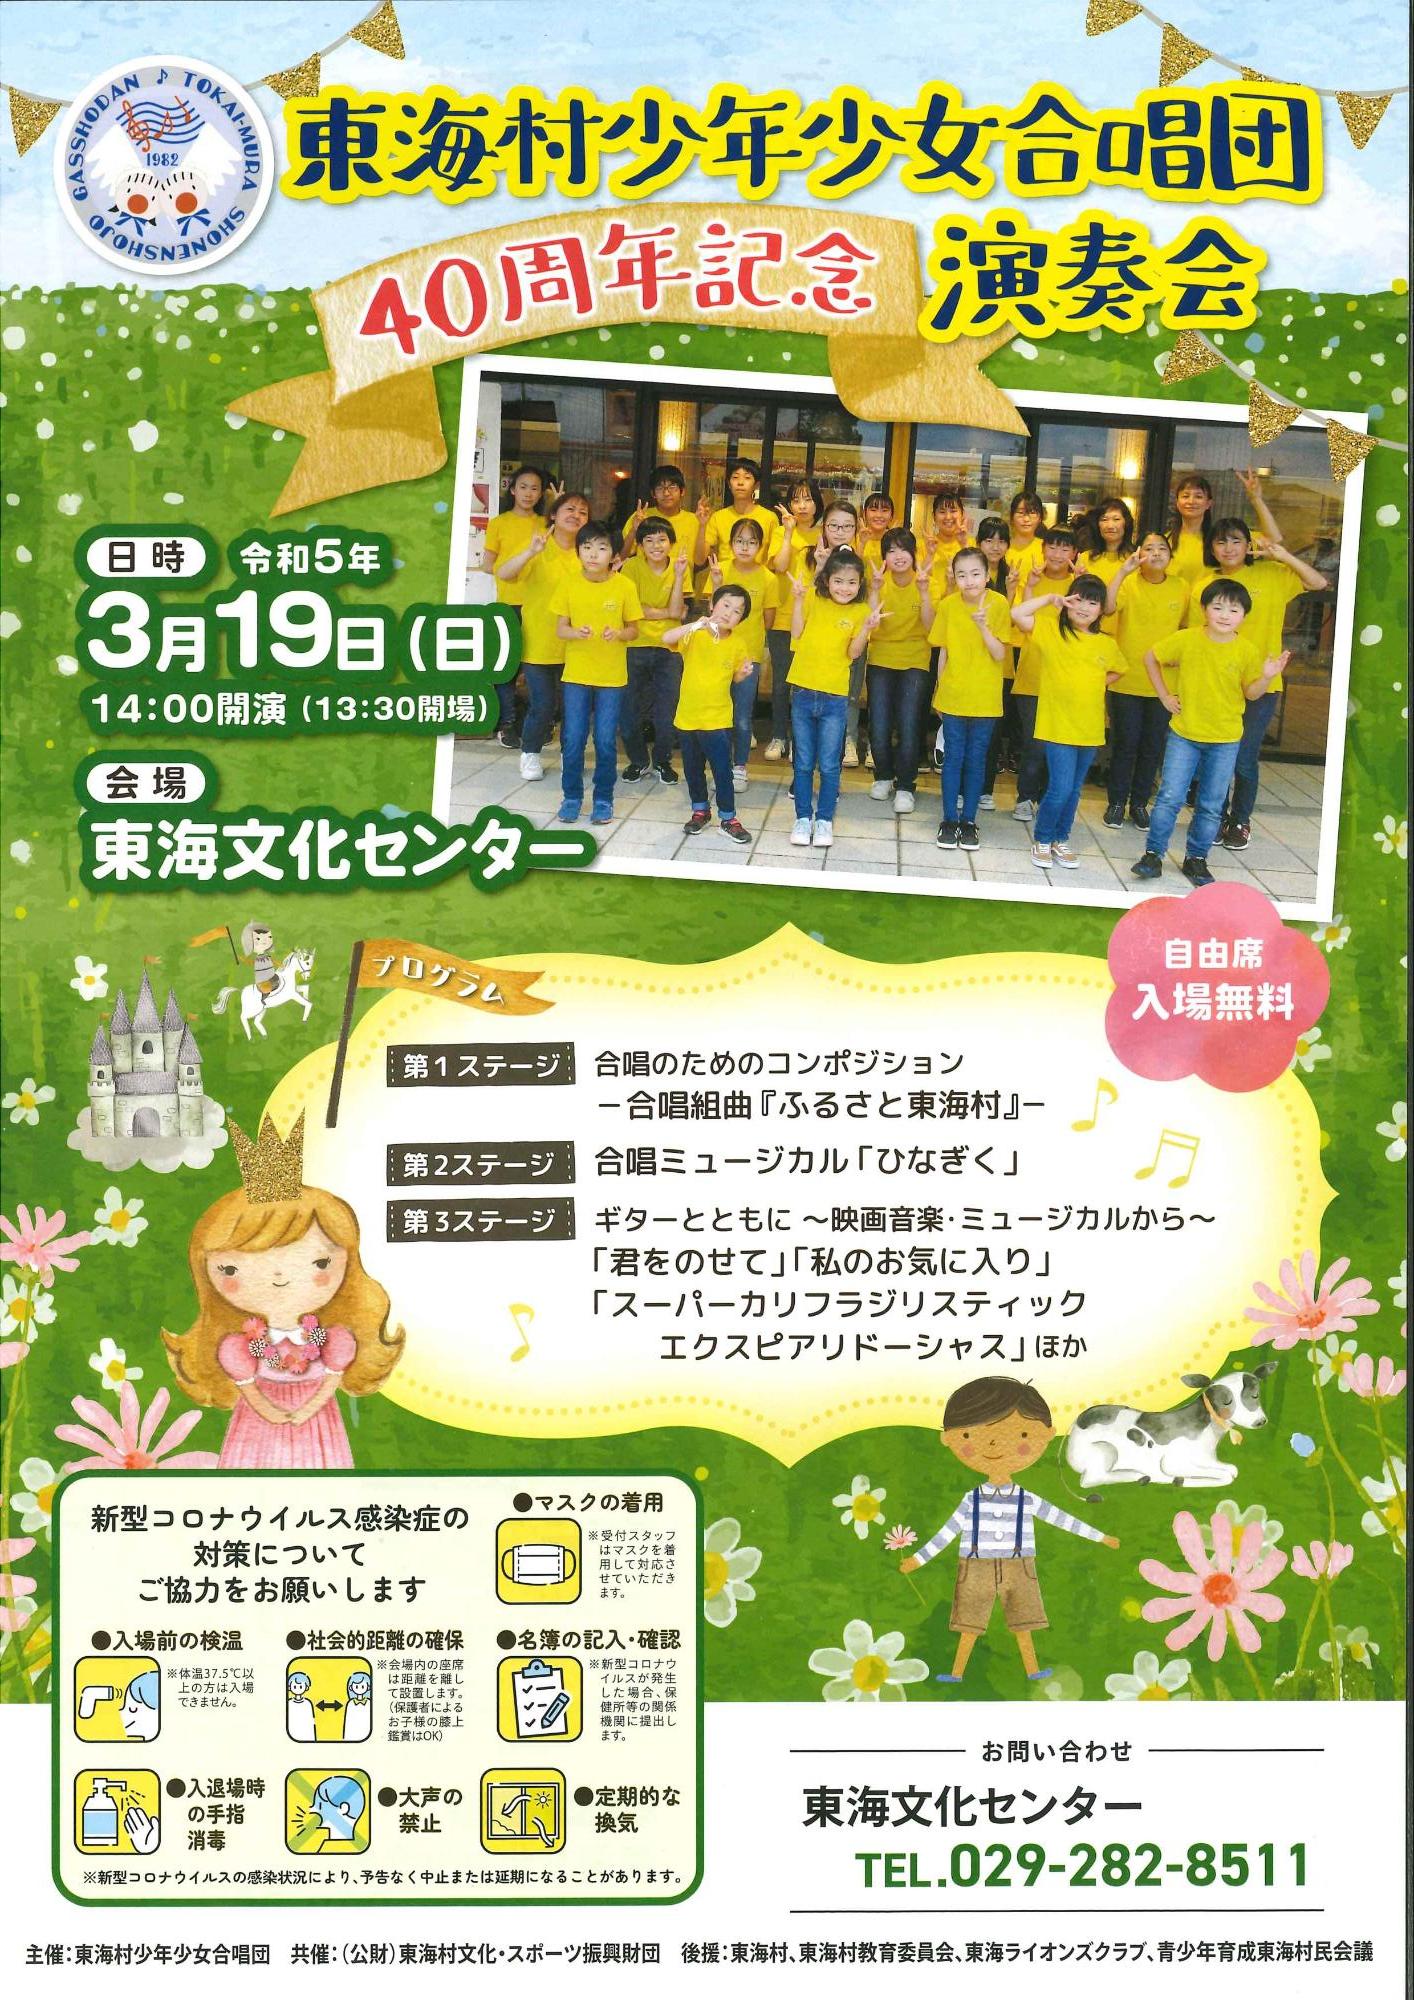 東海村少年少女合唱団40周年記念演奏会チラシ